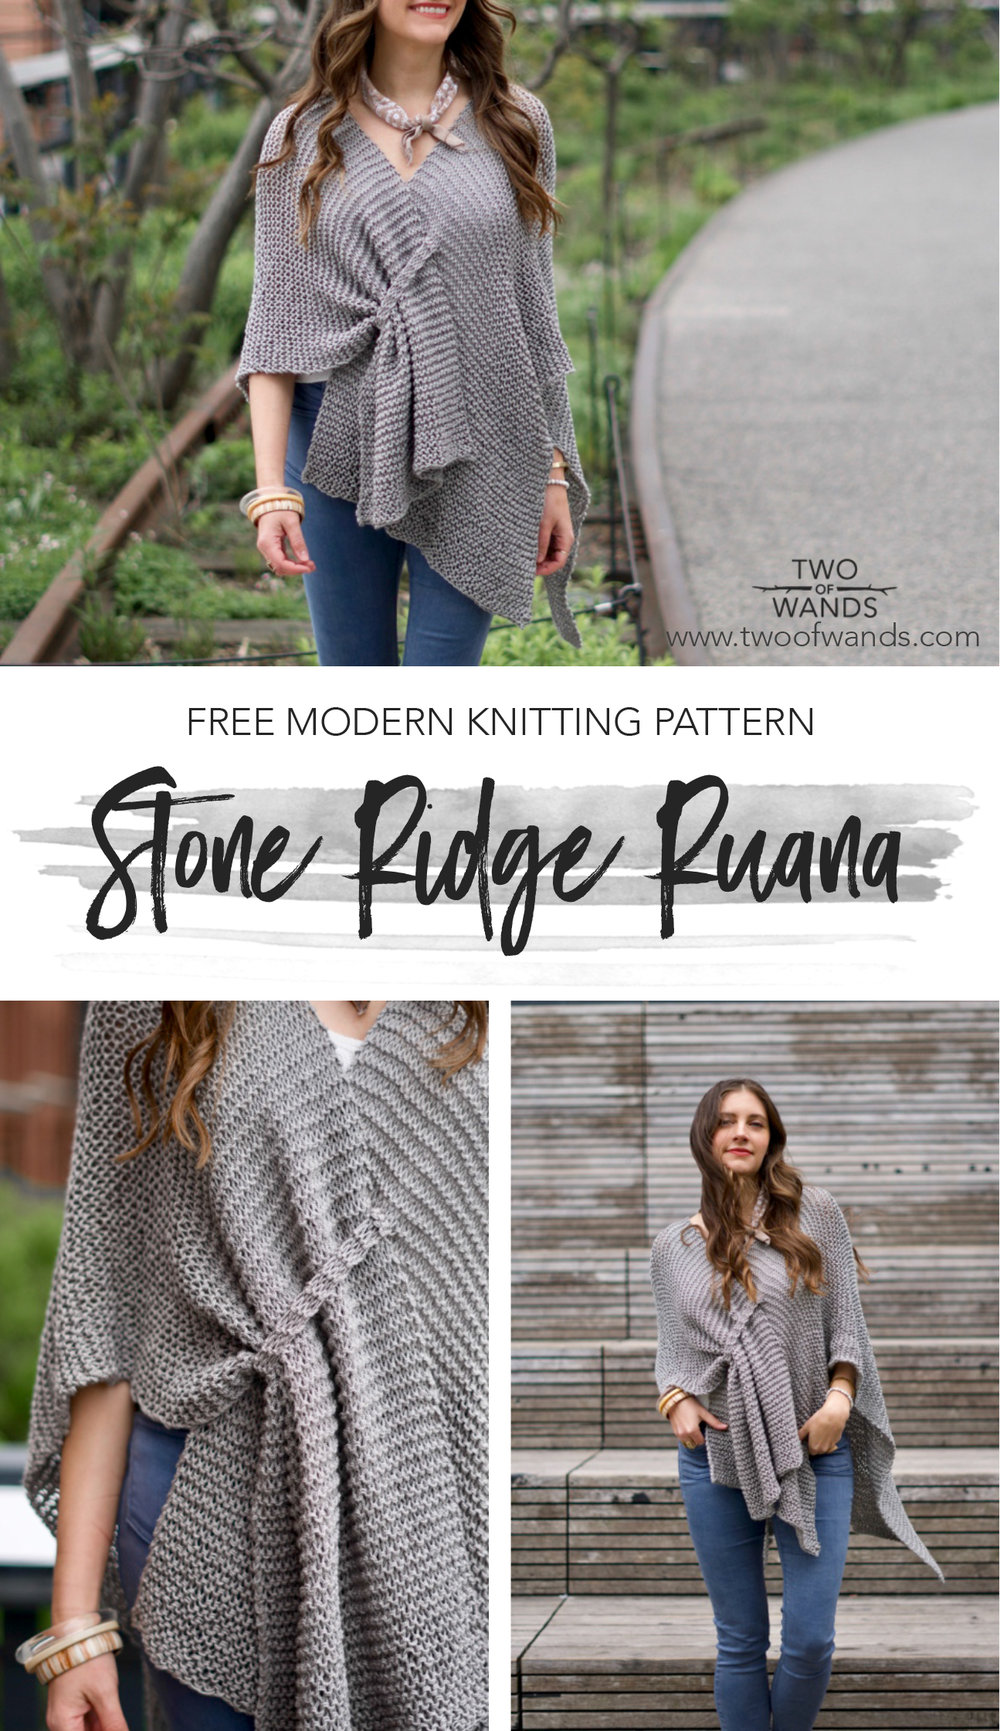 Stone Ridge Ruana pattern by Two of Wands